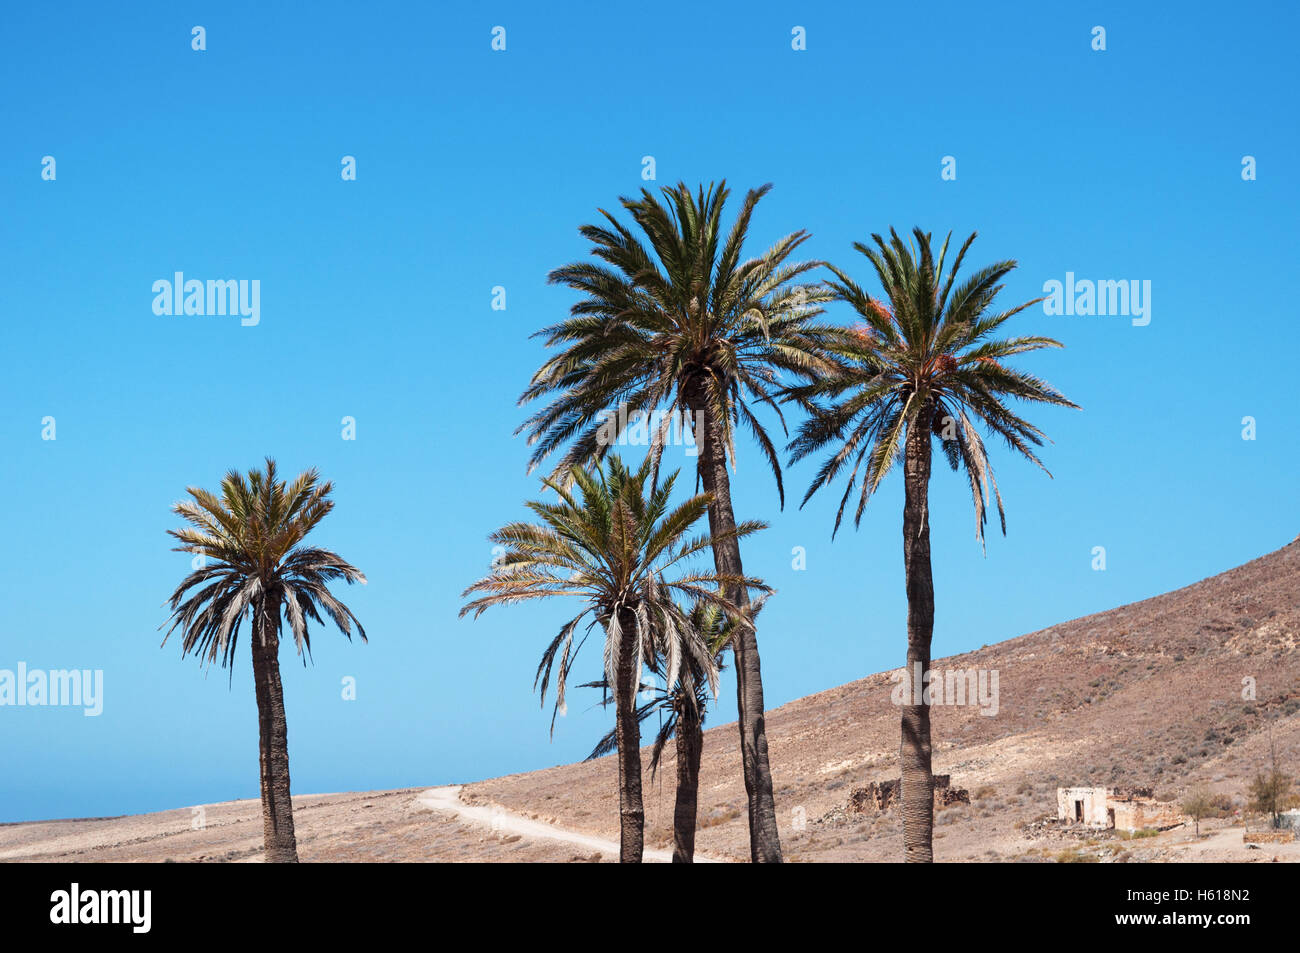 Fuerteventura, Îles Canaries, l'Afrique du Nord : voir le paysage désertique avec des palmiers, des maisons blanches et une terre à la recherche comme la planète de Mars Banque D'Images